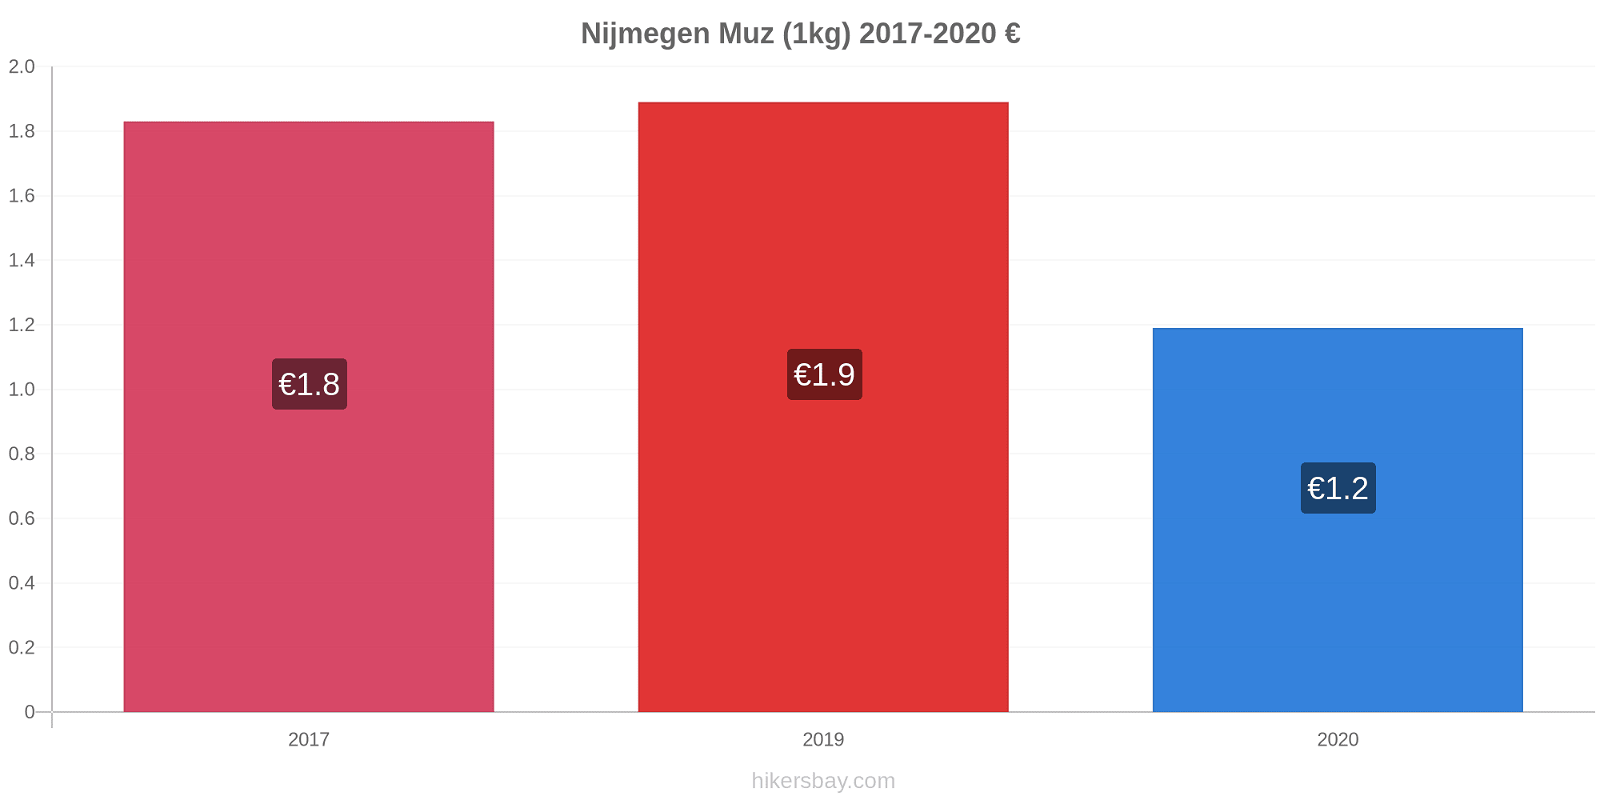 Nijmegen fiyat değişiklikleri Muz (1kg) hikersbay.com